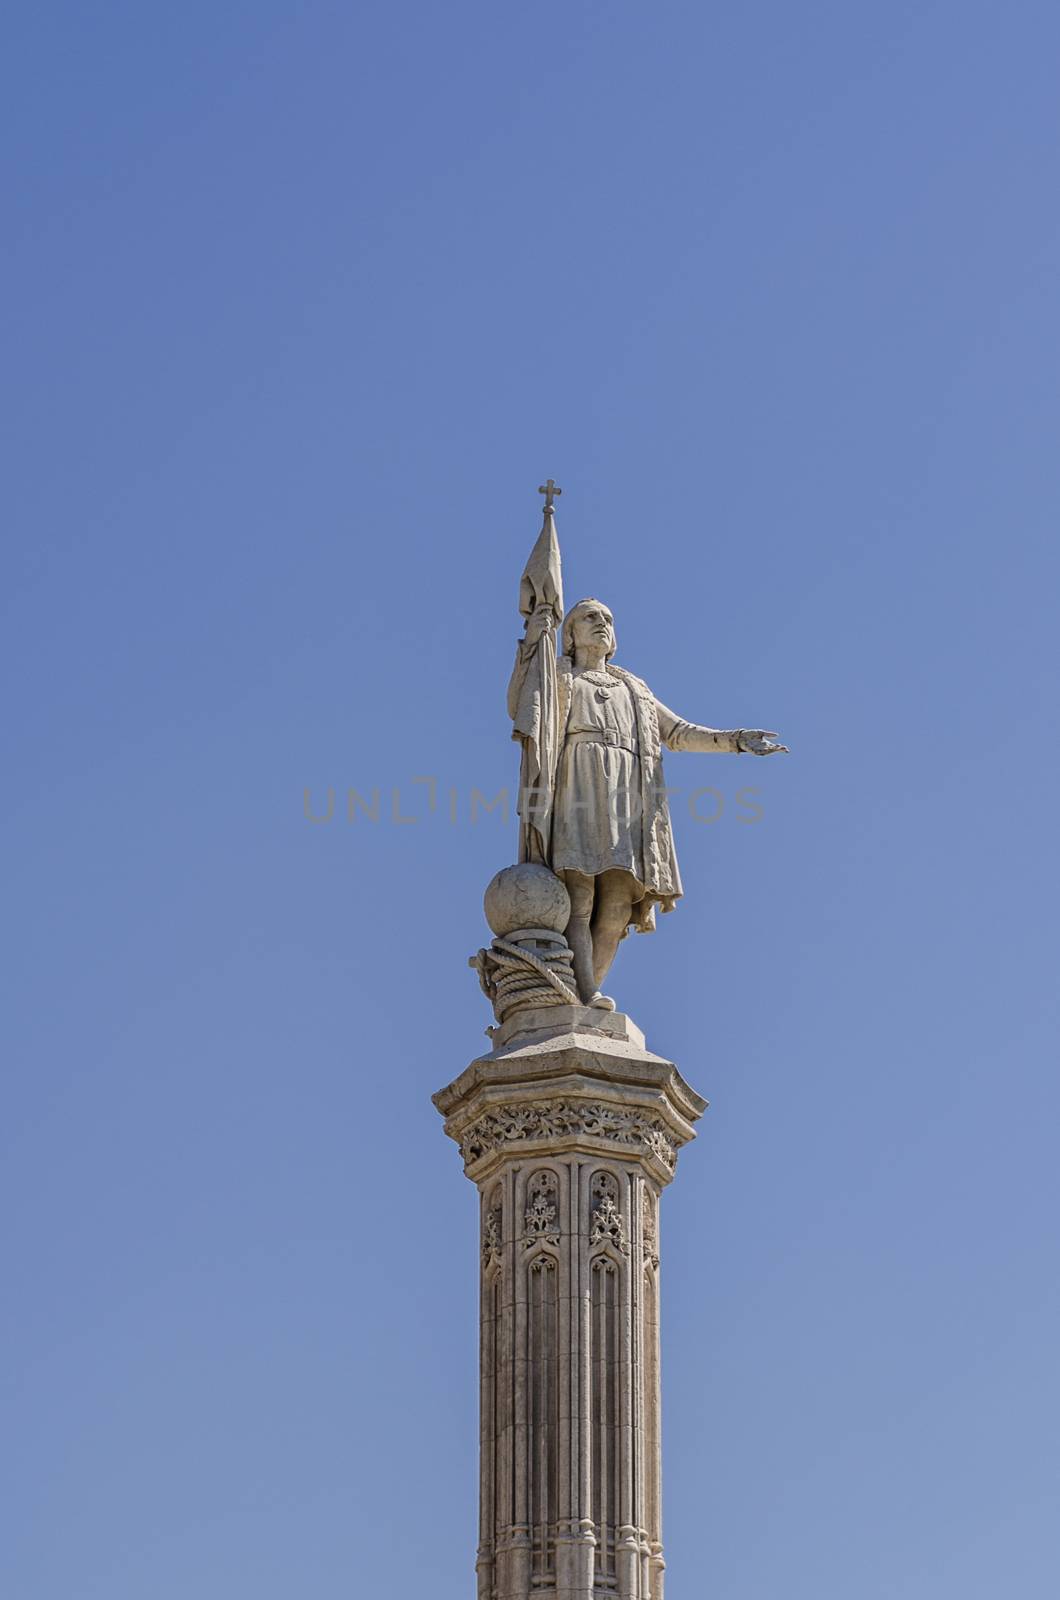 Statue of Columbus in Madrid Spain